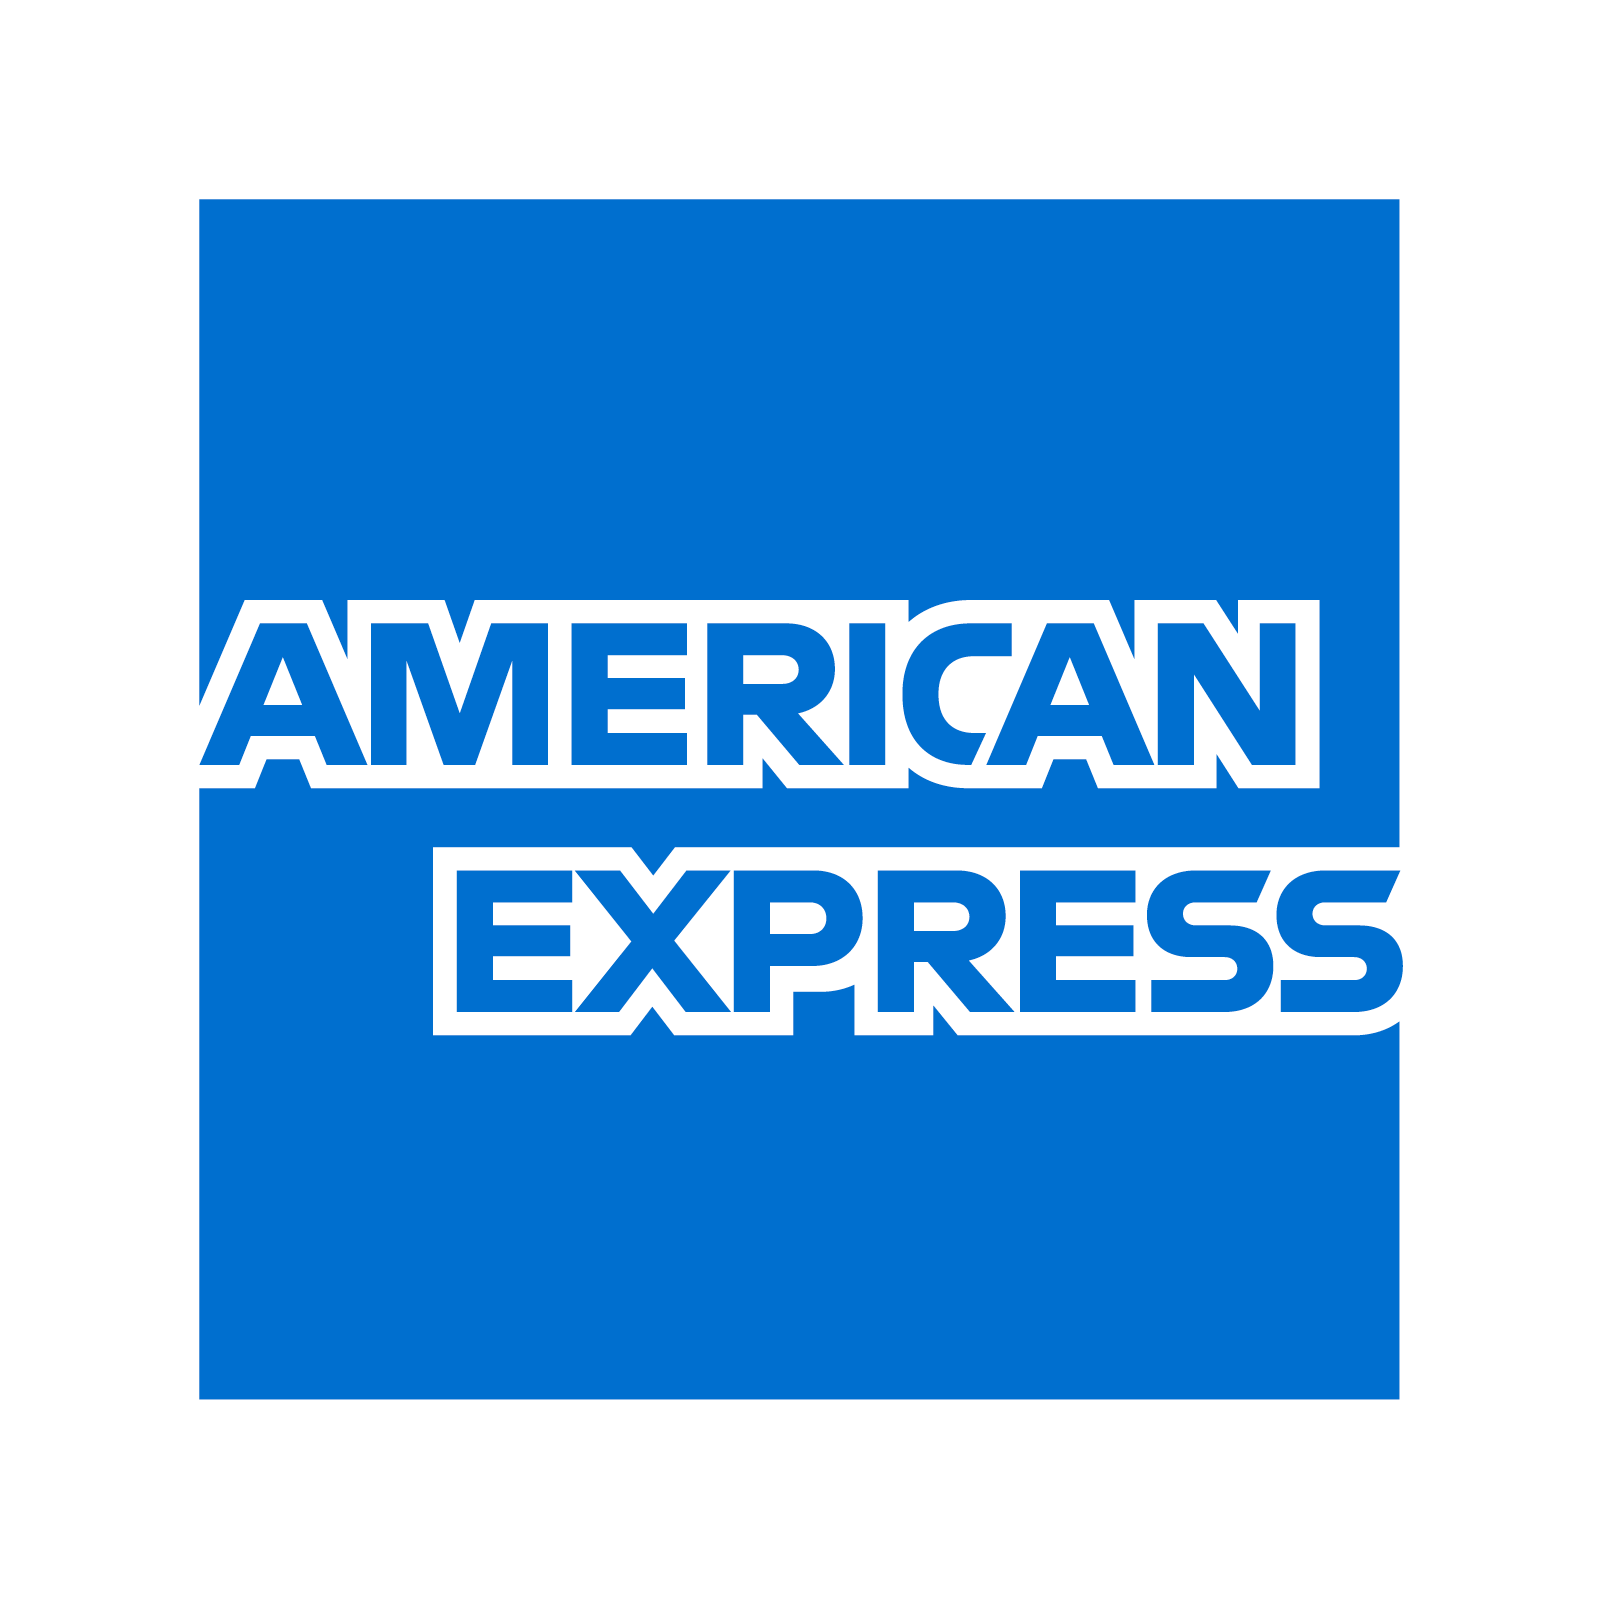 american-express-logo